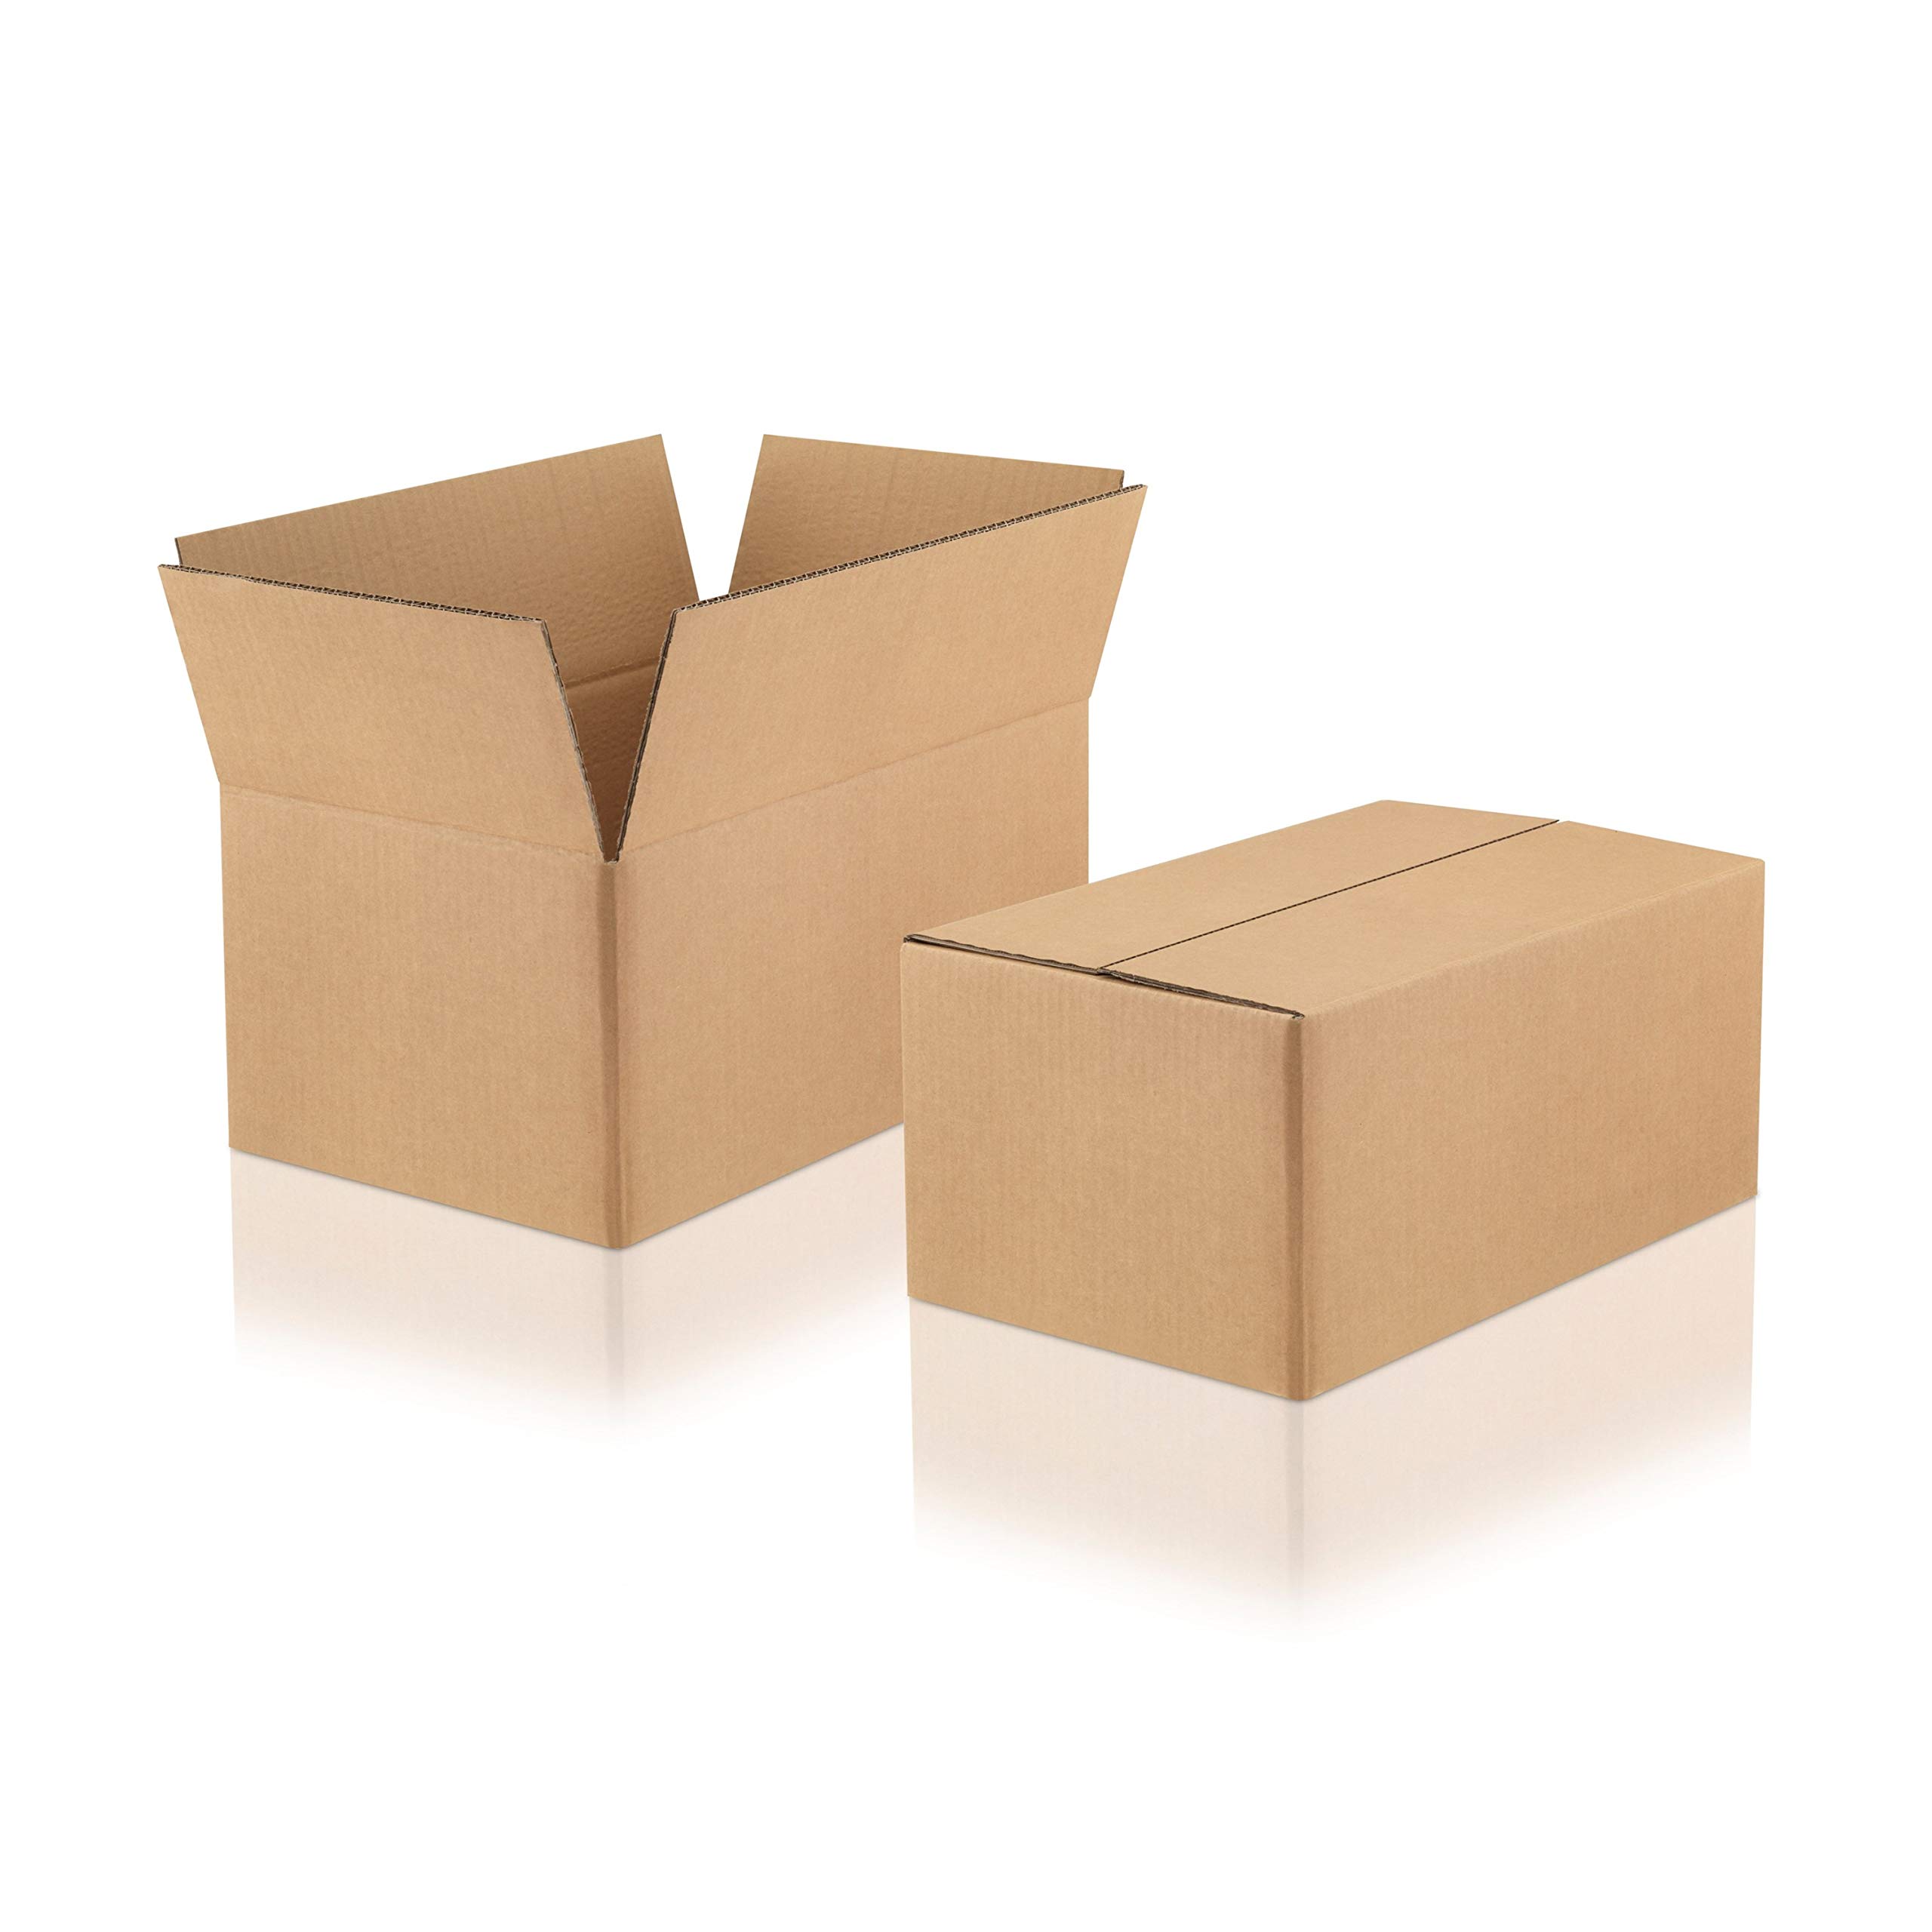 WPTrading - 10 Stück Versandkarton 2-wellig 370 x 260 x 180 mm Wellpappe (Nr. 2W-41) Braun - Pappe Faltkarton für Warenversendung, Paket & Päckchen groß (L) - Karton Versandverpackung extra stabil